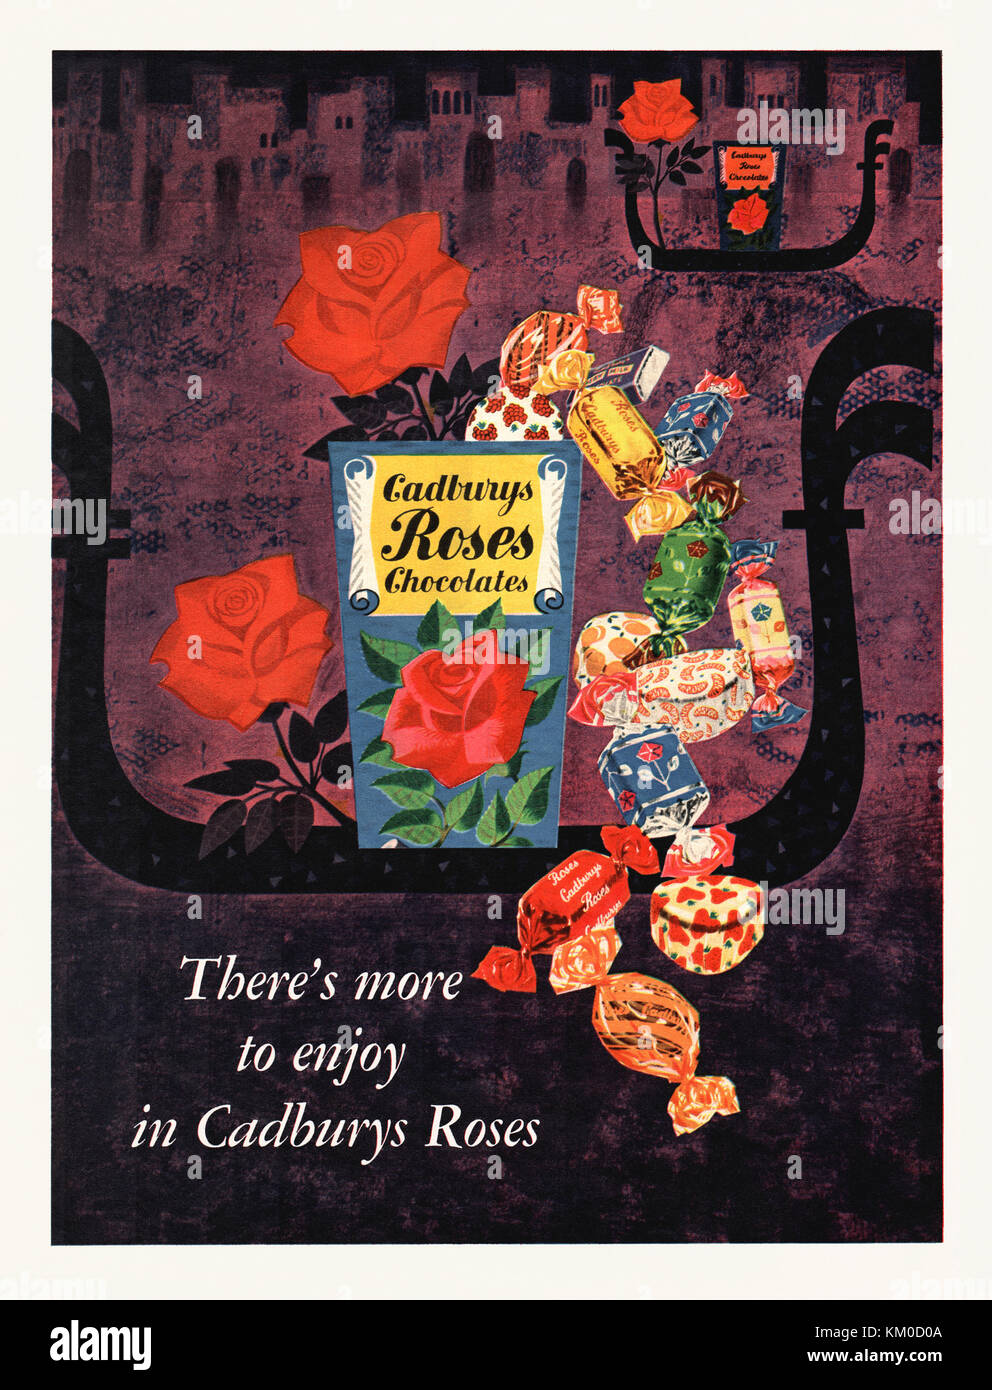 Alte Werbung für eine Auswahlbox mit Cadburys Roses Pralinen. Es erschien in einer Zeitschrift, die 1959 in Großbritannien veröffentlicht wurde. Die stilvolle Abbildung zeigt Kästen des Produkts auf venezianischen Gondeln. Beachten Sie, dass es keinen Apostroph gibt - es ist eher Cadburys als Cadburys Stockfoto